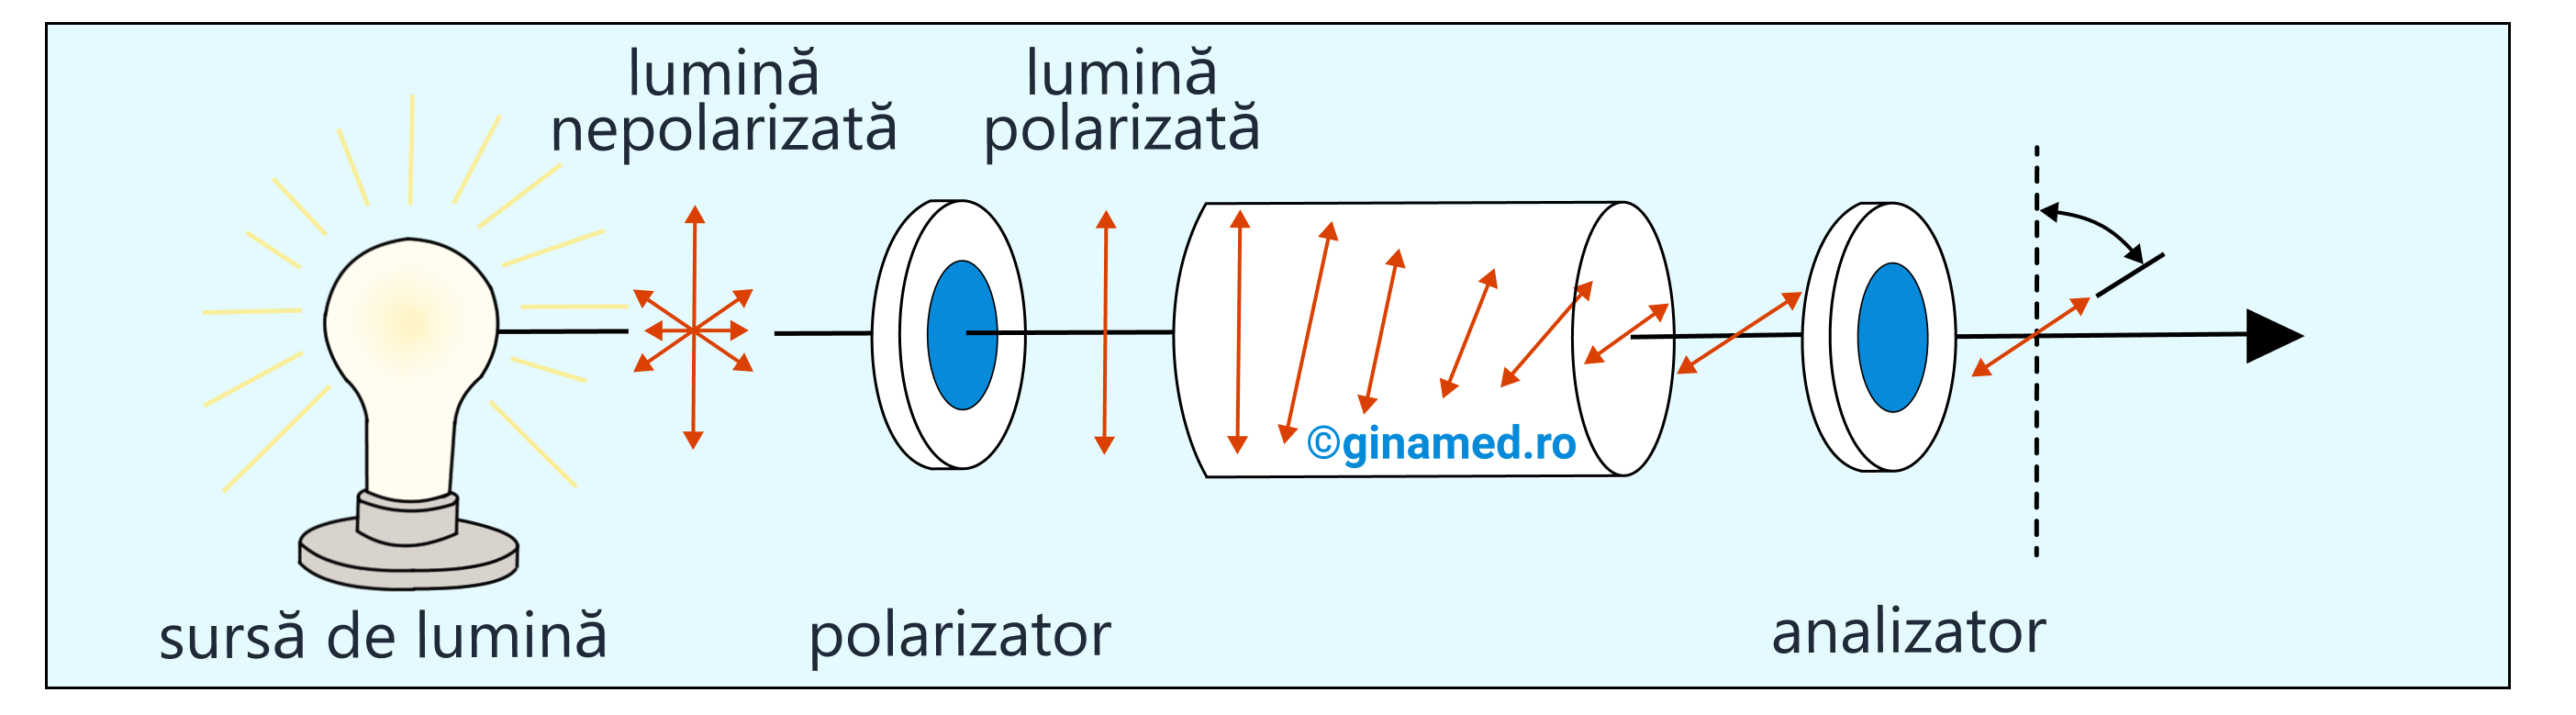 &nbsp; Pentru a pune în evidență experimental activitatea optică, se recurge la un instrument –&nbsp;<b>polarimetru</b>. Acesta are rolul de a măsura unghiul de rotație care apare atunci când lumina polarizată traversează substanțe optic active. Astfel, lumina nepolarizată ce provine de la o sursă de lumină traversează polarimetrul. În interiorul acestuia se află un polarizor care polarizează liniar razele de lumină. Aceste raze vor traversa substanța de analizat optic activă. Cu ajutorul analizorului se poate stabili unghiul de rotație al planului luminii polarizate.&nbsp;&nbsp;